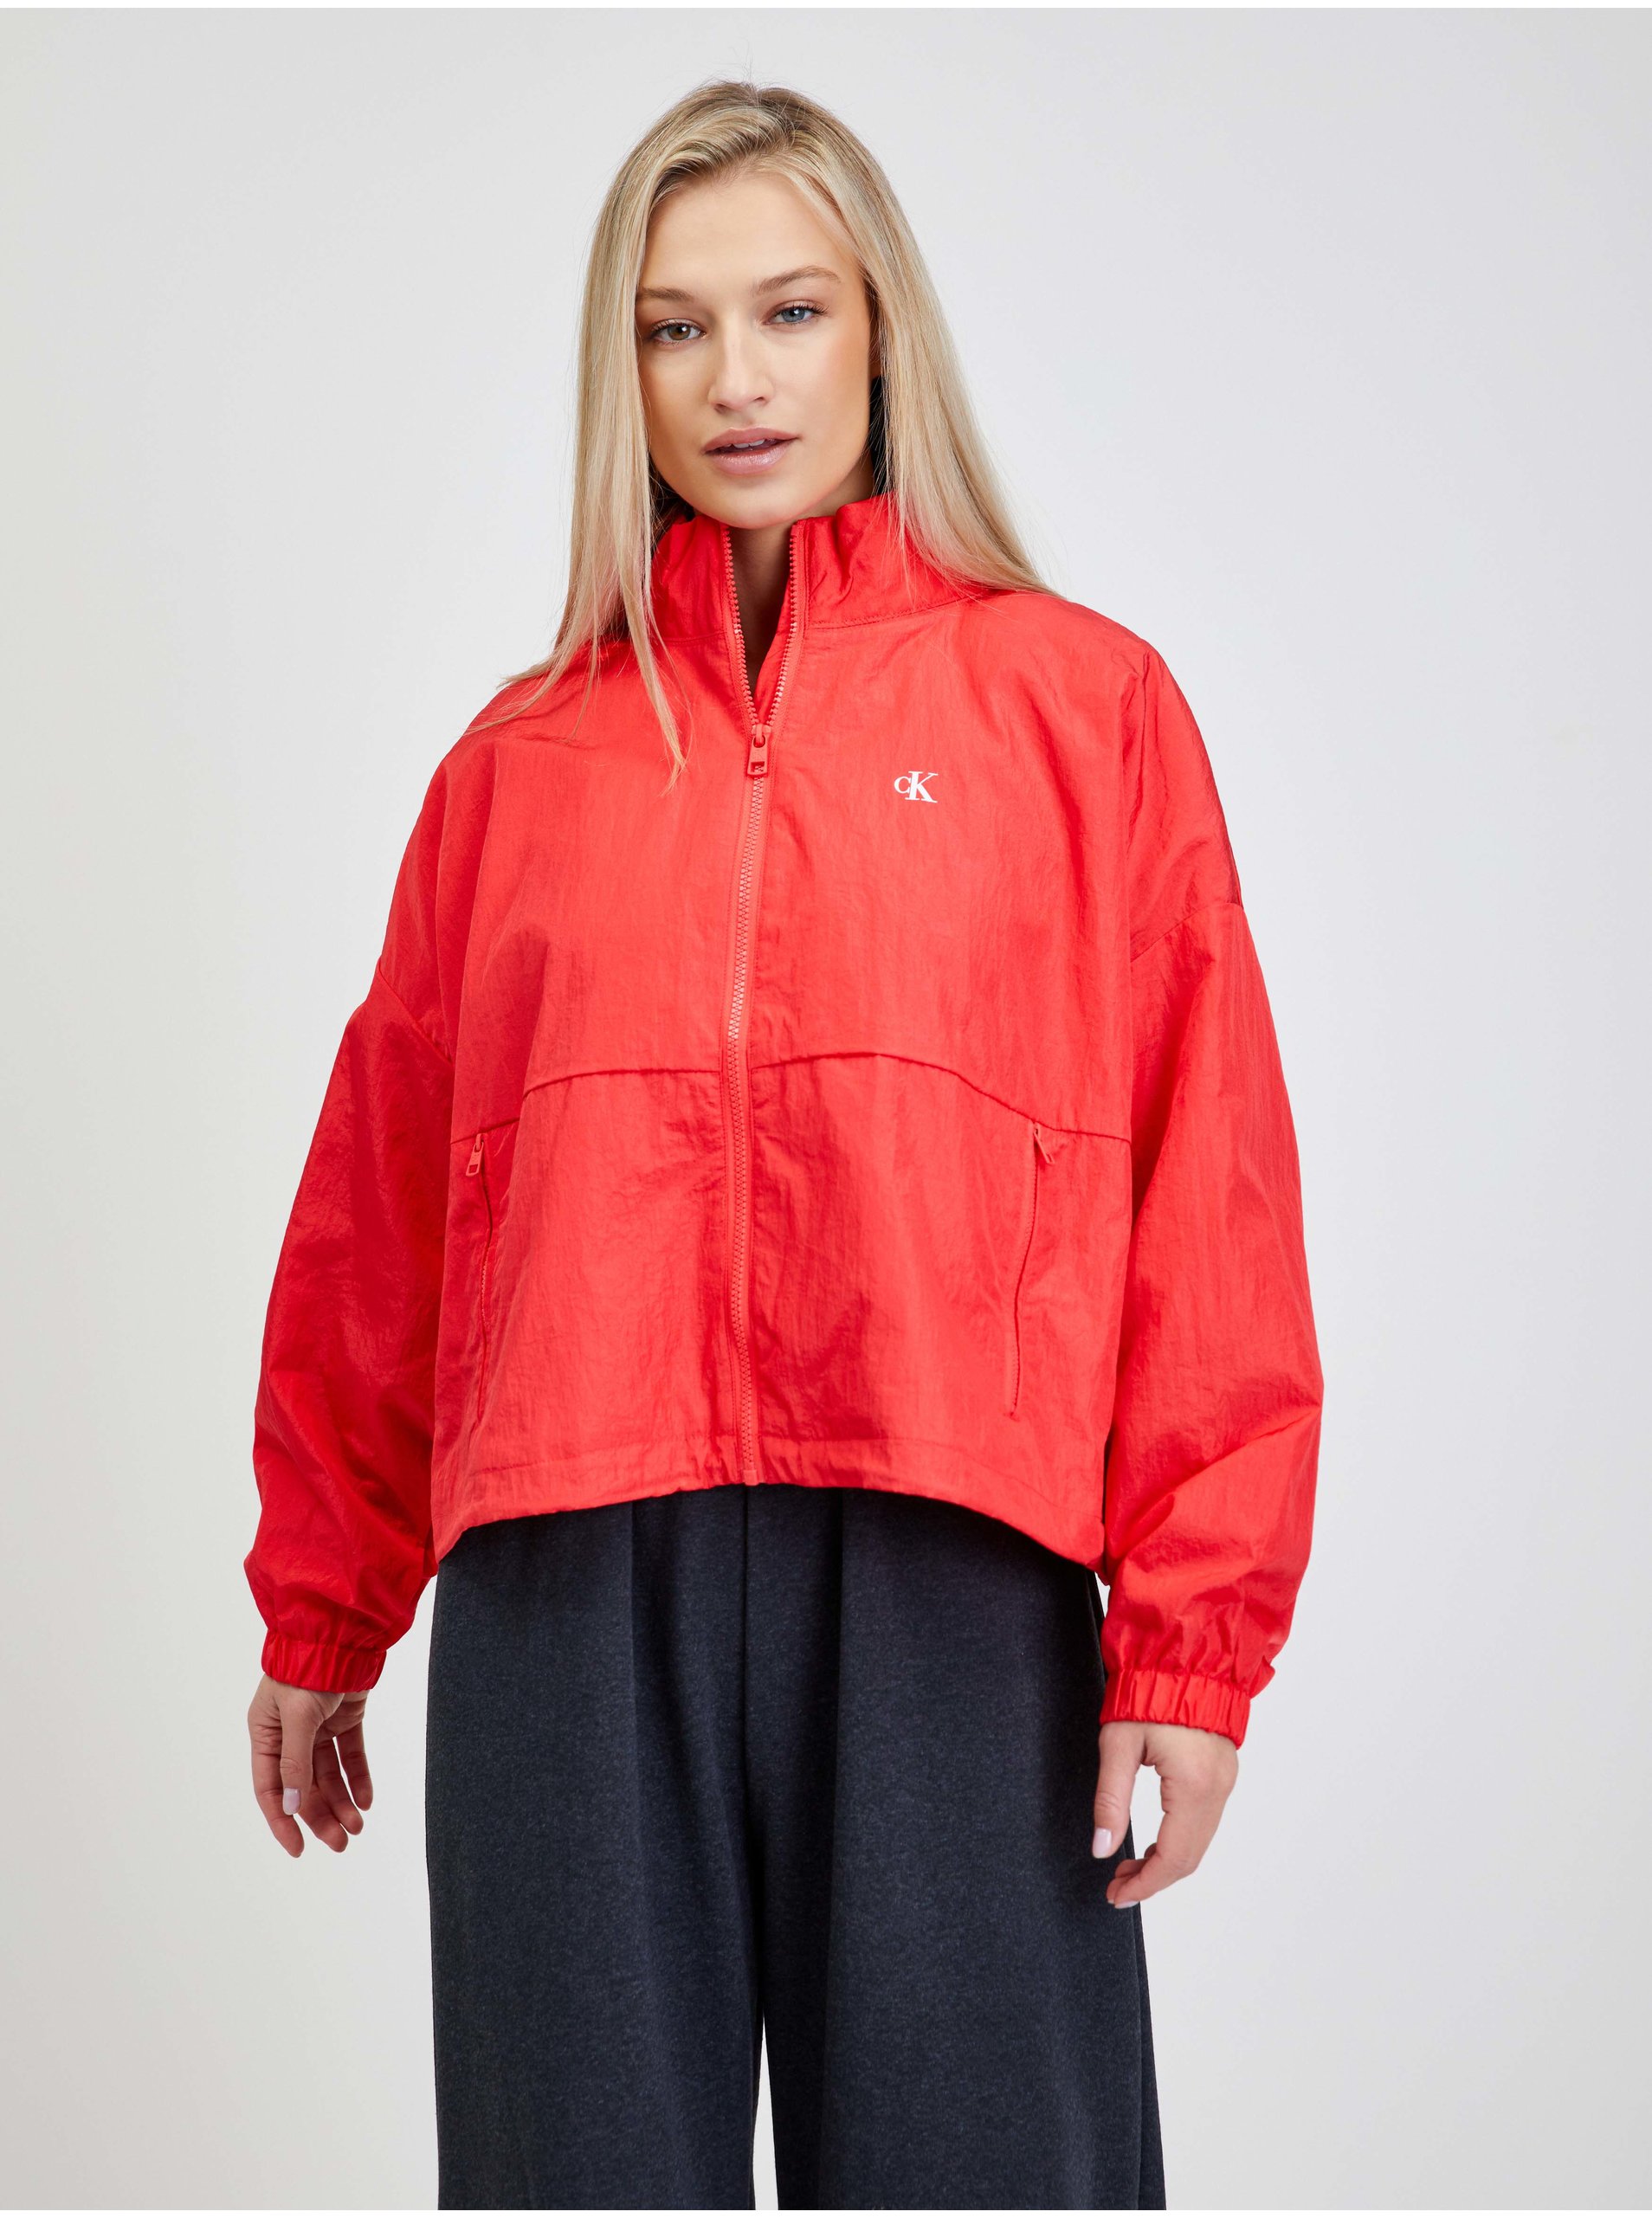 Červená dámska voľná bunda s potlačou džínsov Calvin Klein - dámske